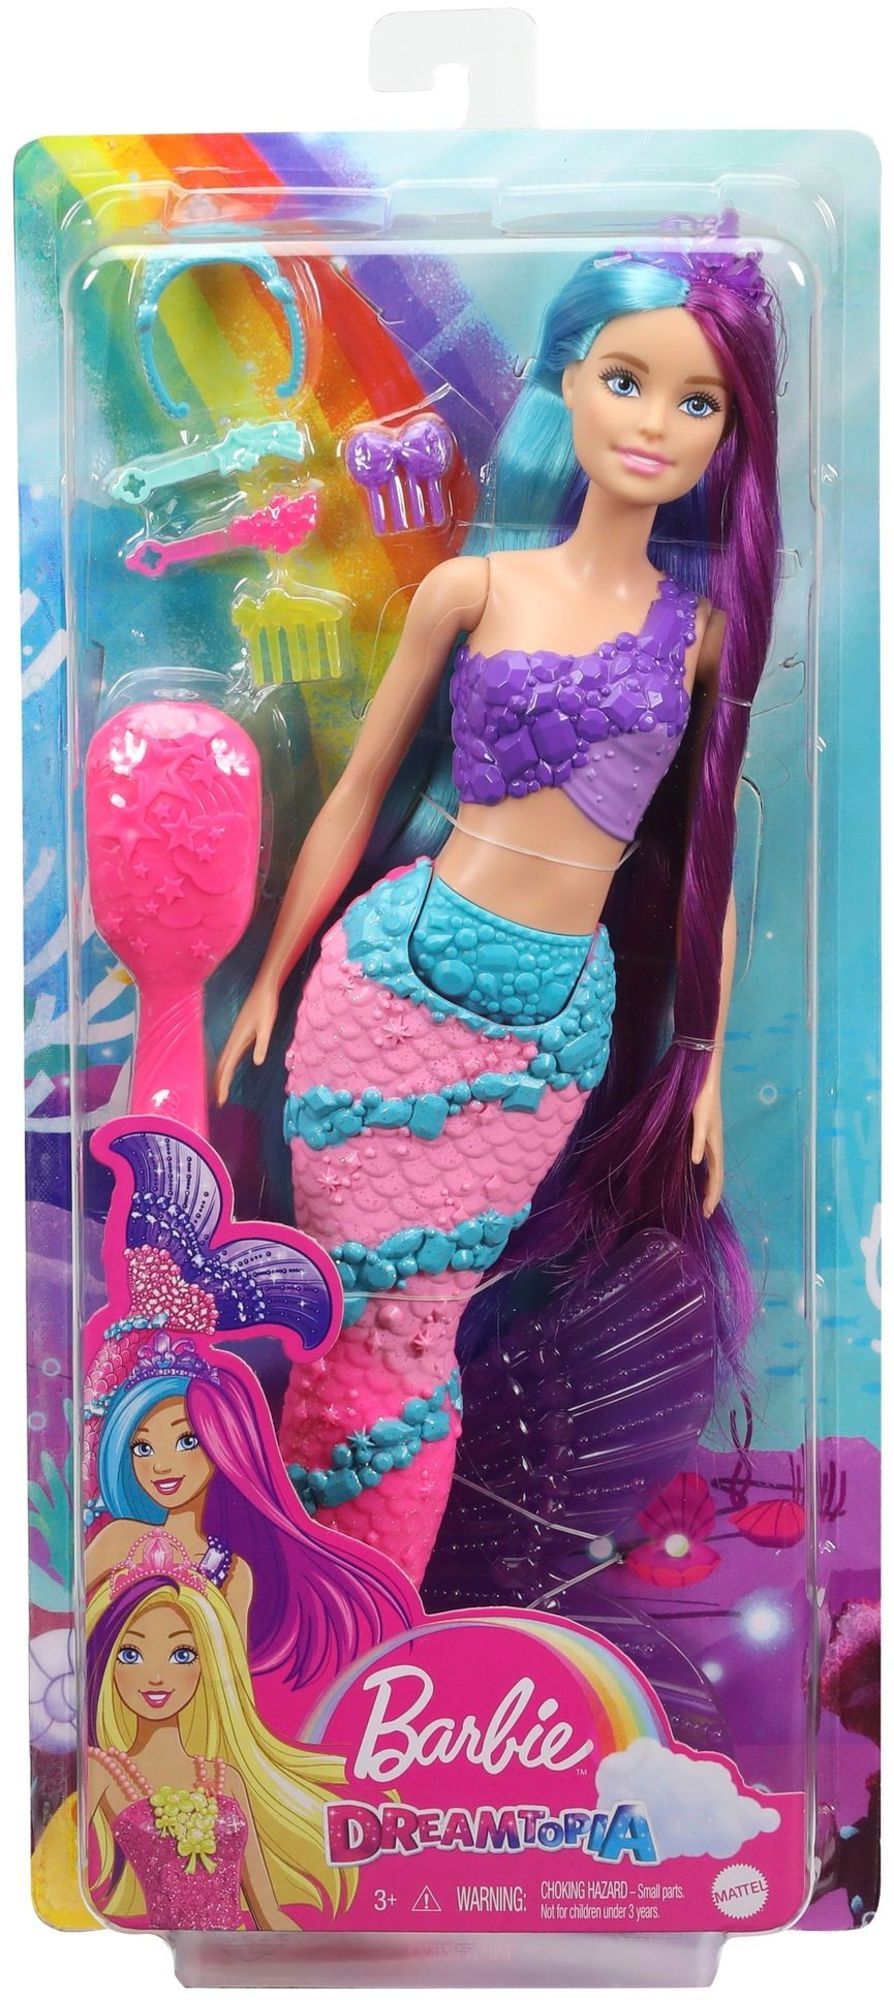 - Spielwaren Barbie langem Barbie - Haar\' Meerjungfrau Puppe Regenbogenzauber kaufen mit Dreamtopia